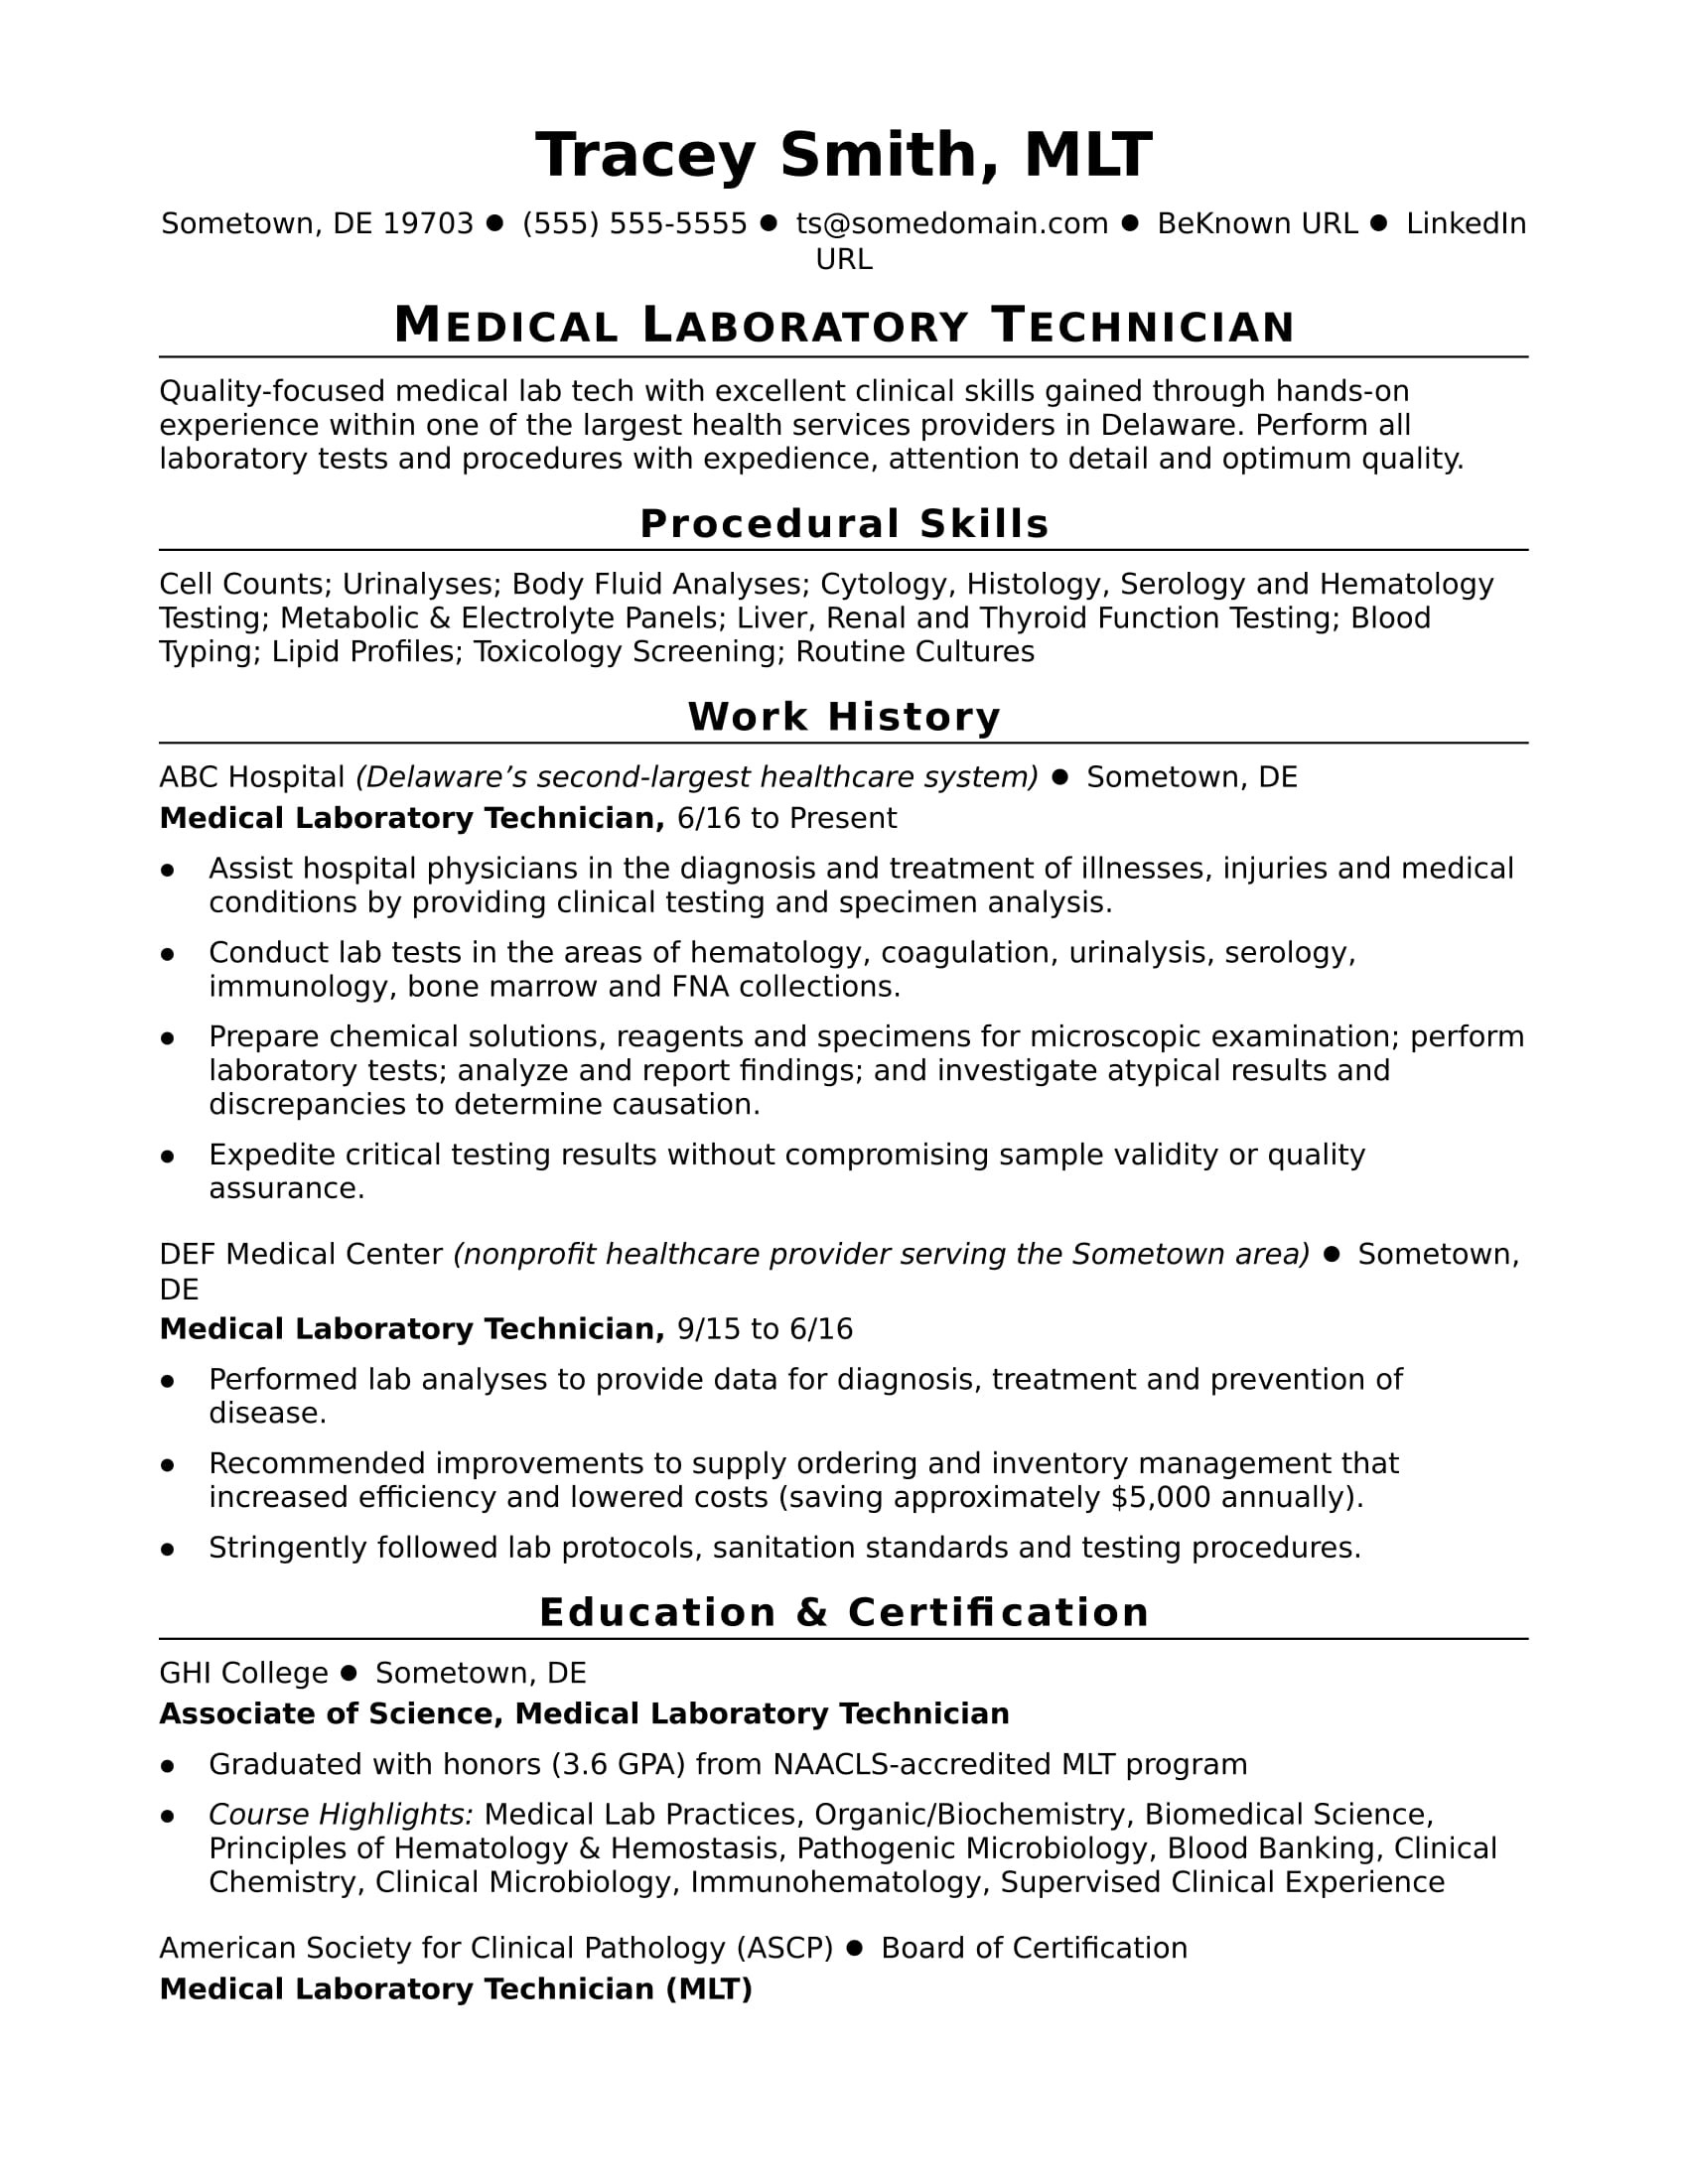 Sample Resume Research Lab Technician Graduate Student Sample Lab Technician Resume Monster.com